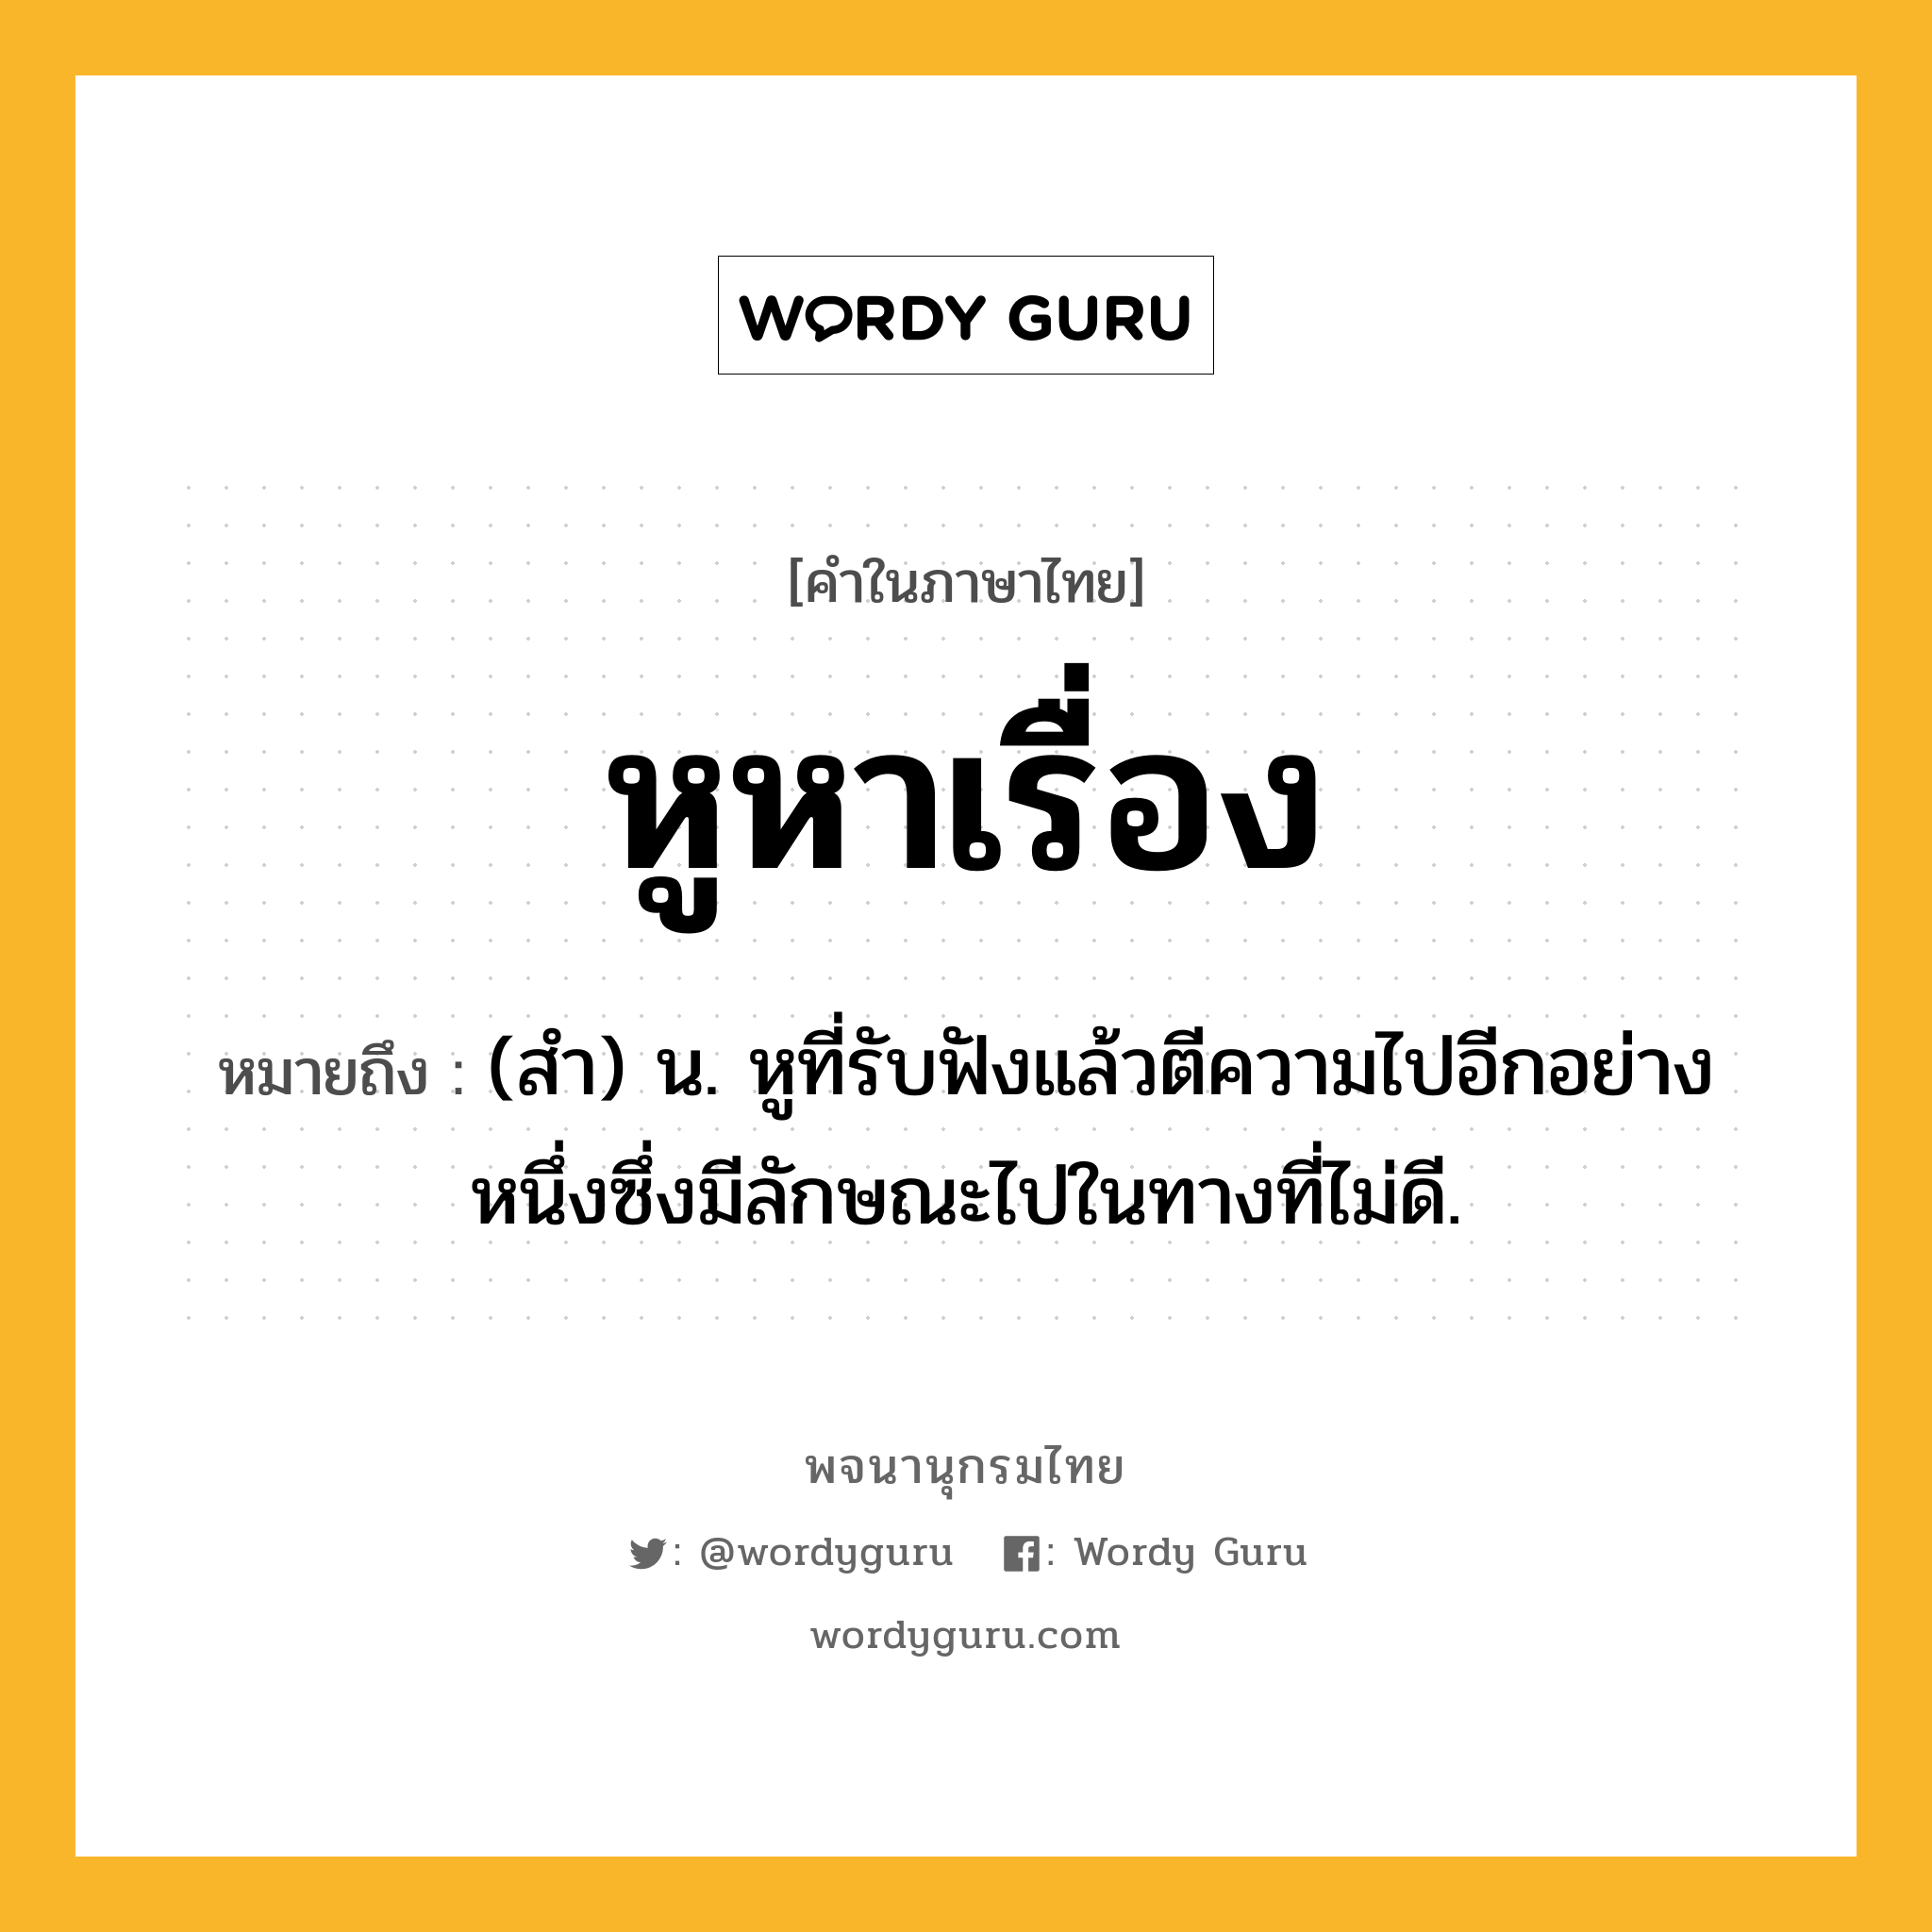 หูหาเรื่อง ความหมาย หมายถึงอะไร?, คำในภาษาไทย หูหาเรื่อง หมายถึง (สำ) น. หูที่รับฟังแล้วตีความไปอีกอย่างหนึ่งซึ่งมีลักษณะไปในทางที่ไม่ดี.